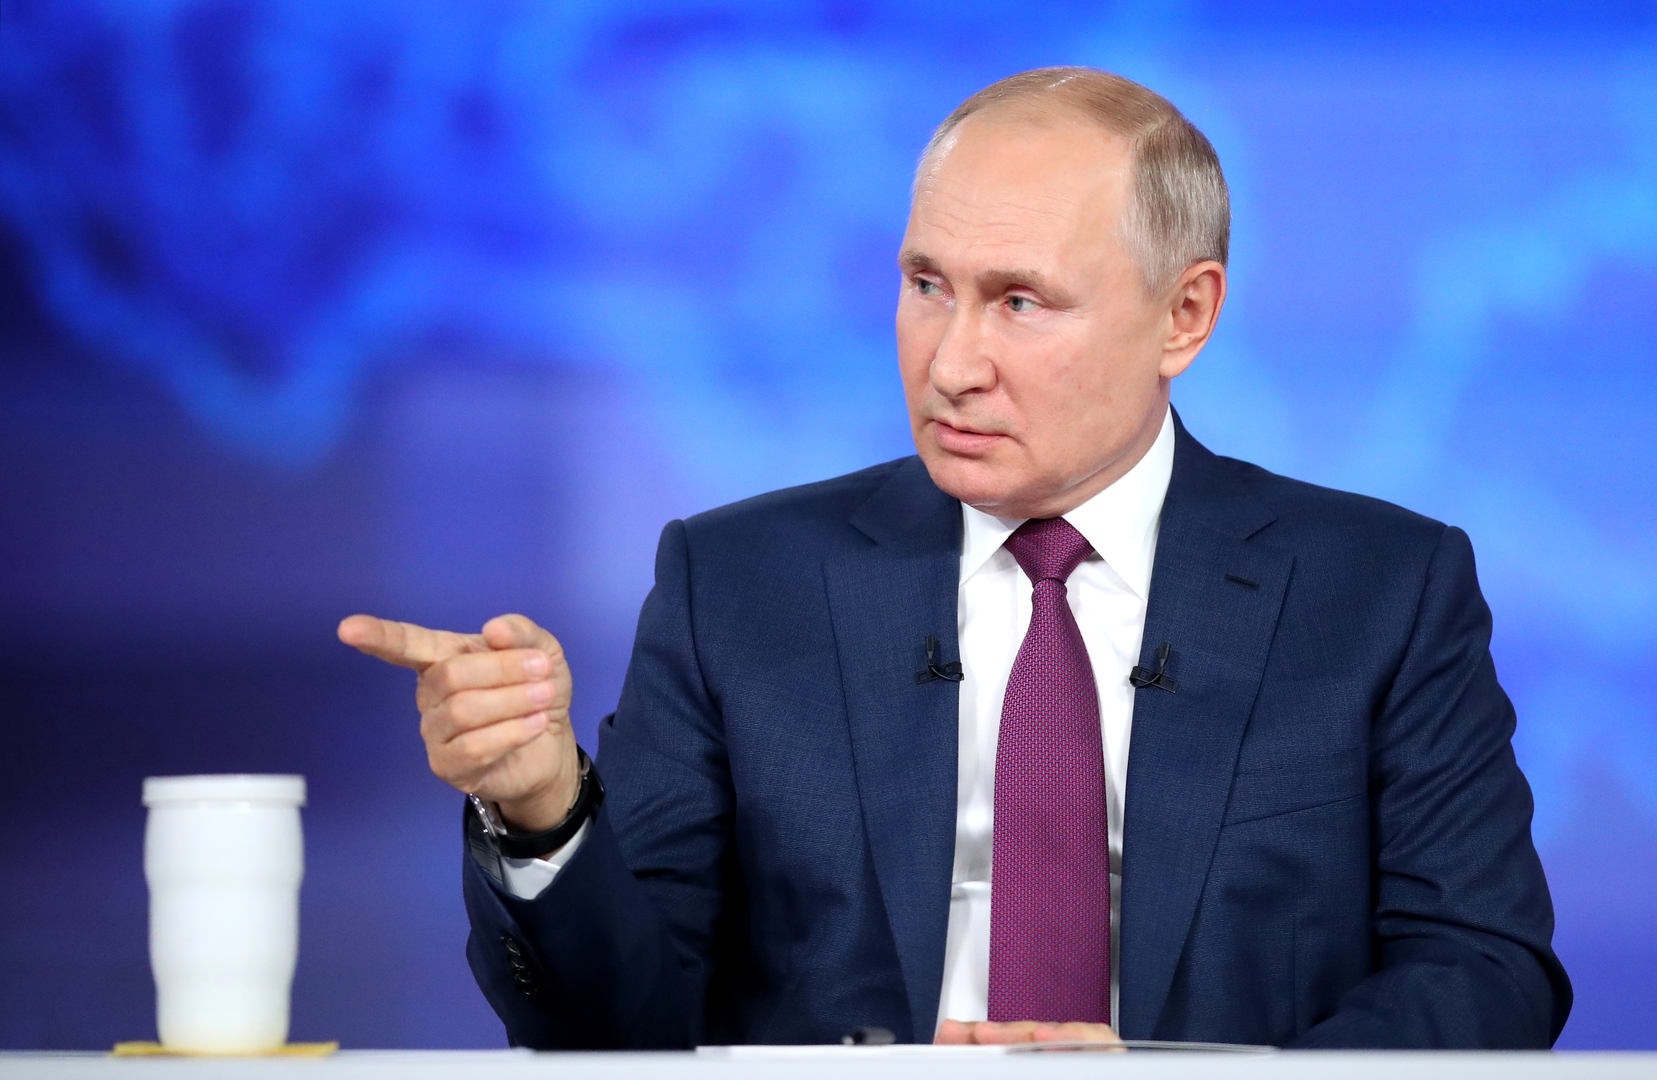 بوتين يقول رأيه في الشائع من أن الجائحة مؤامرة عالمية